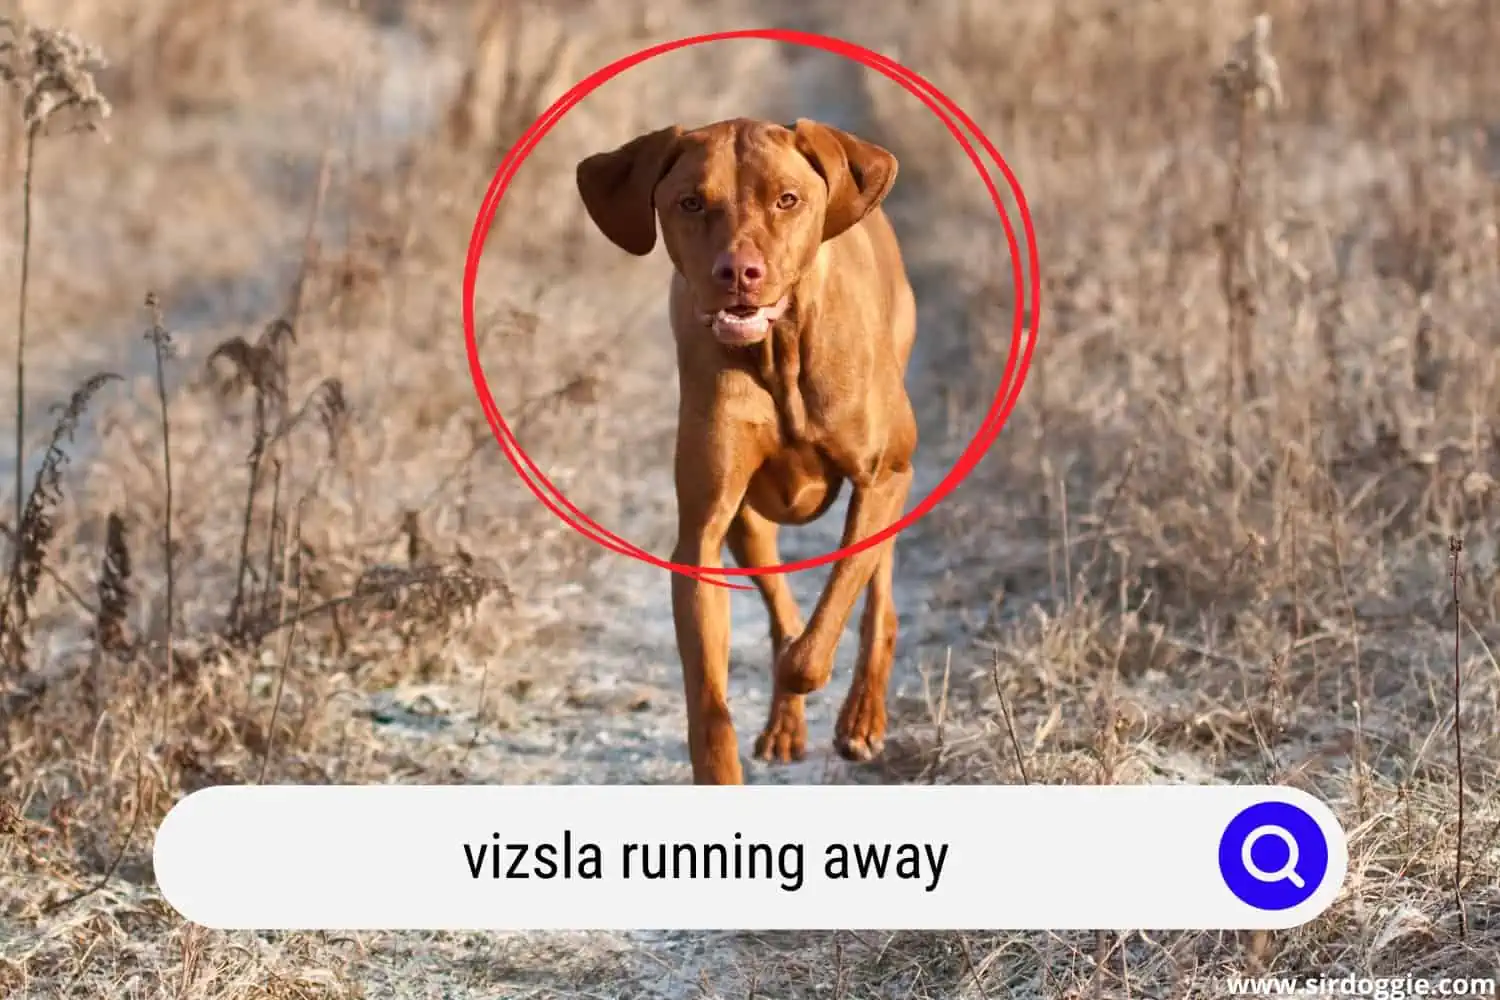 A Vizsla dog running away